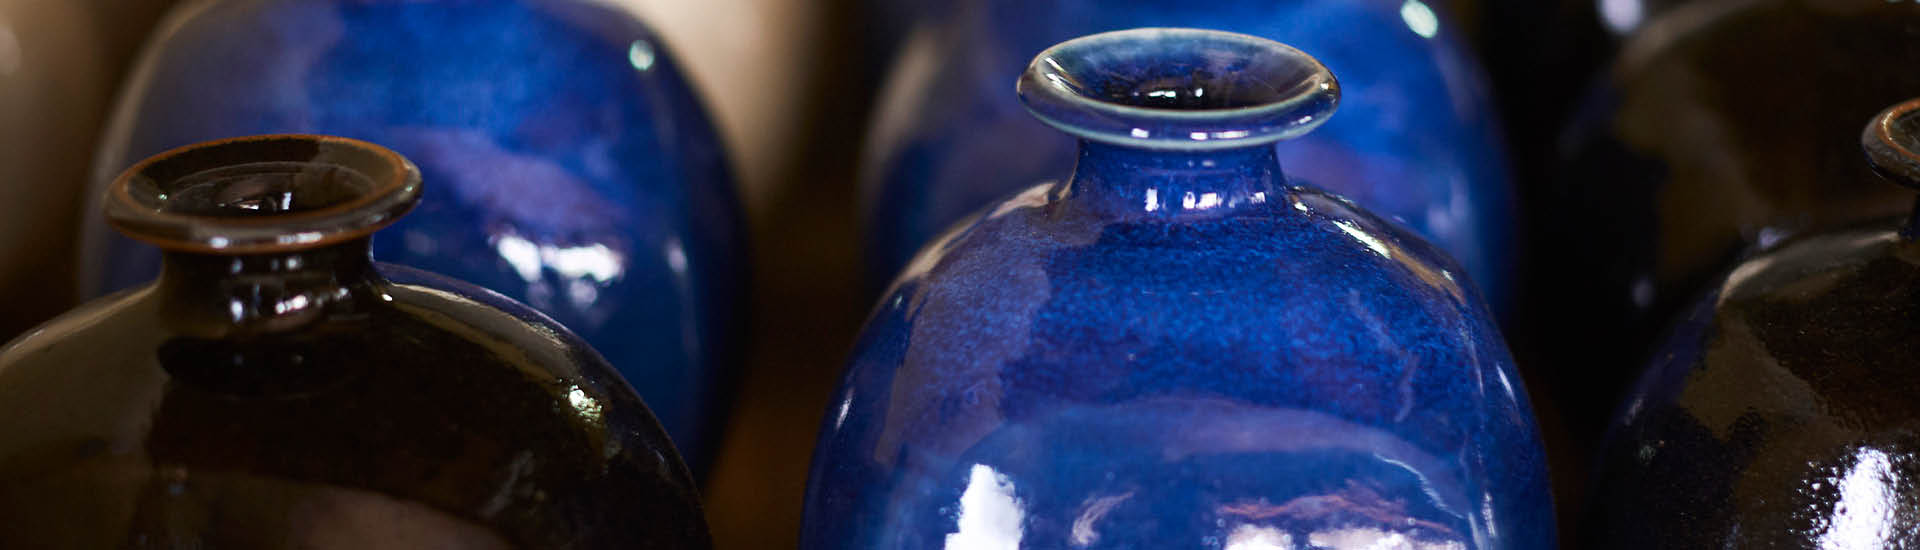 Detalhe de potes de cerâmica azuis e pretos